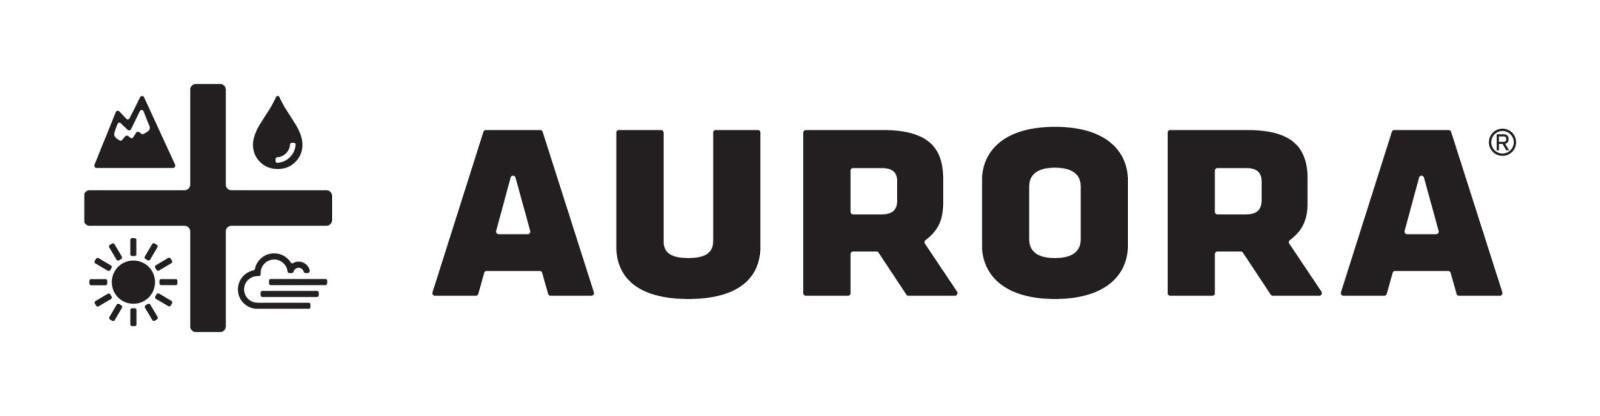 Aurora | Brand